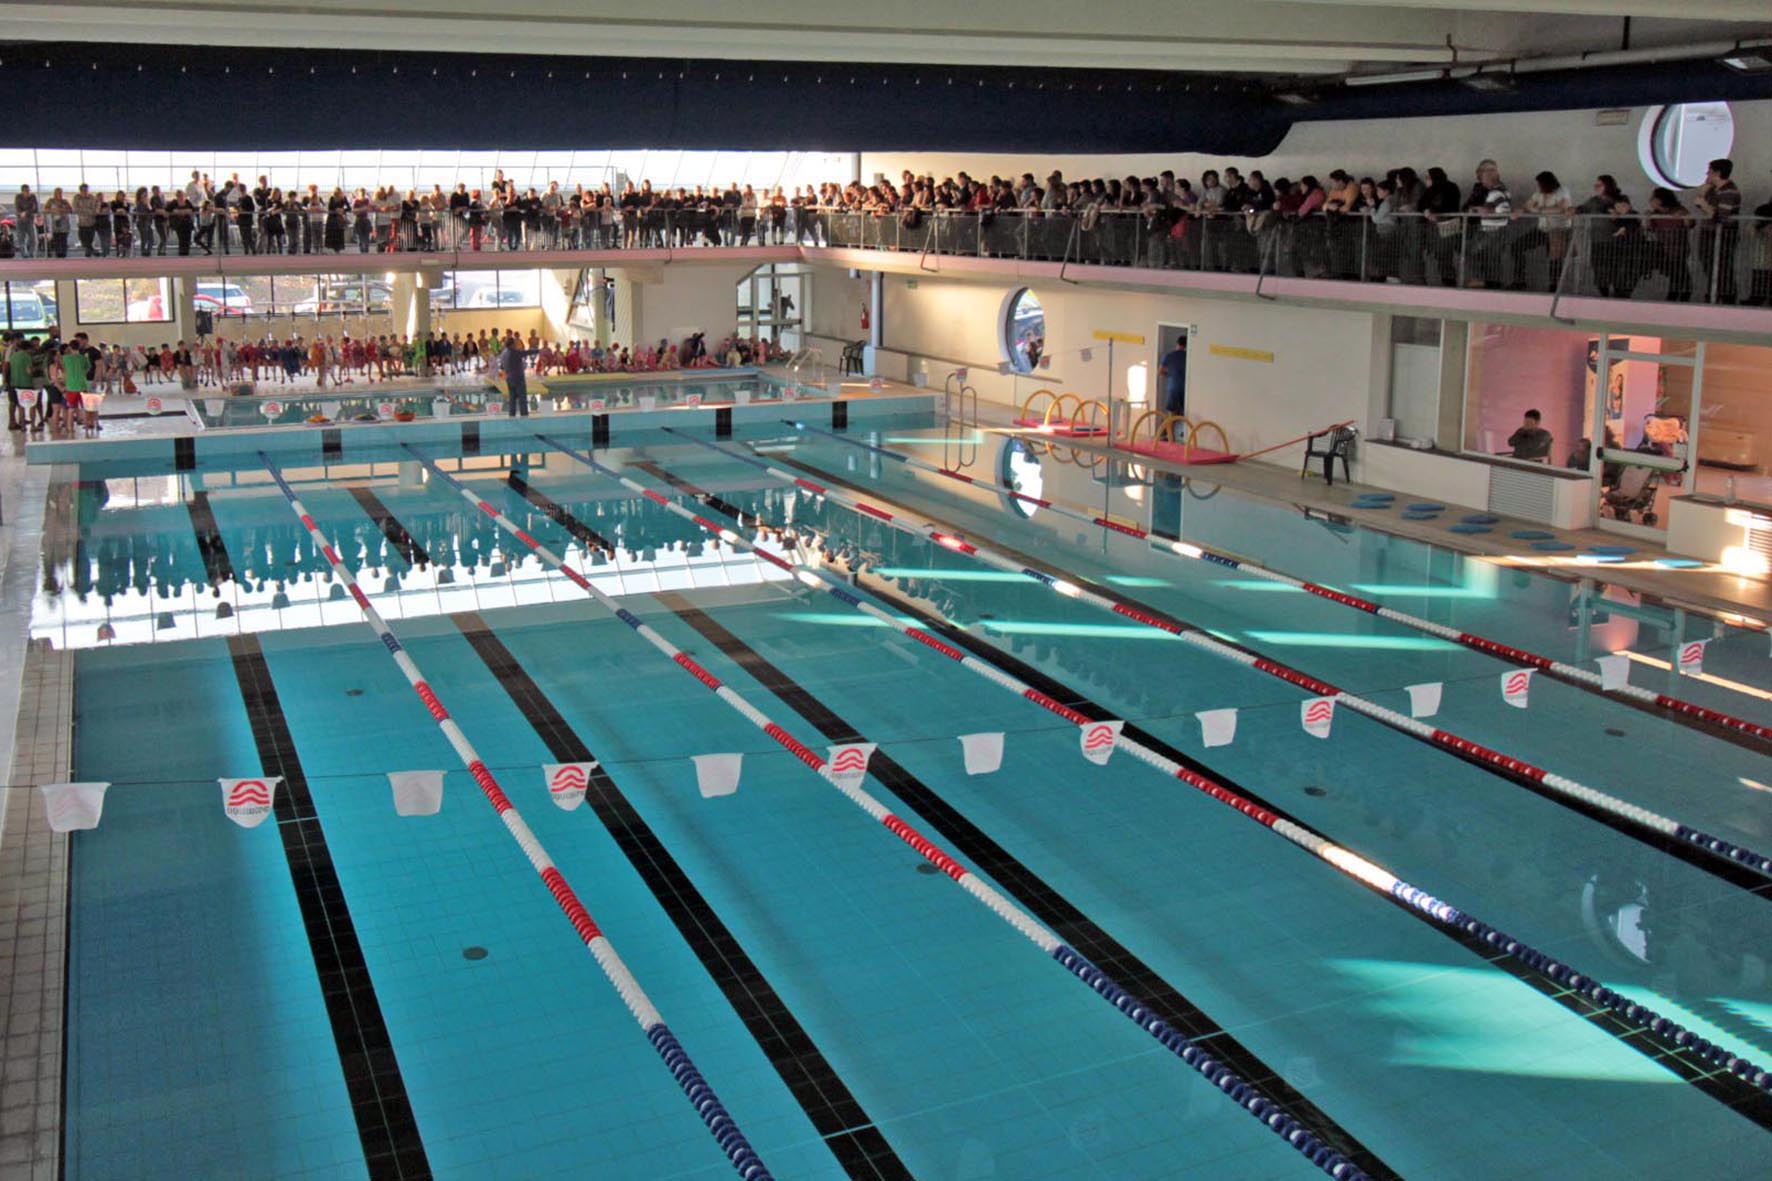 La piscina comunale di Foiano della Chiana apre la nuova stagione sportiva